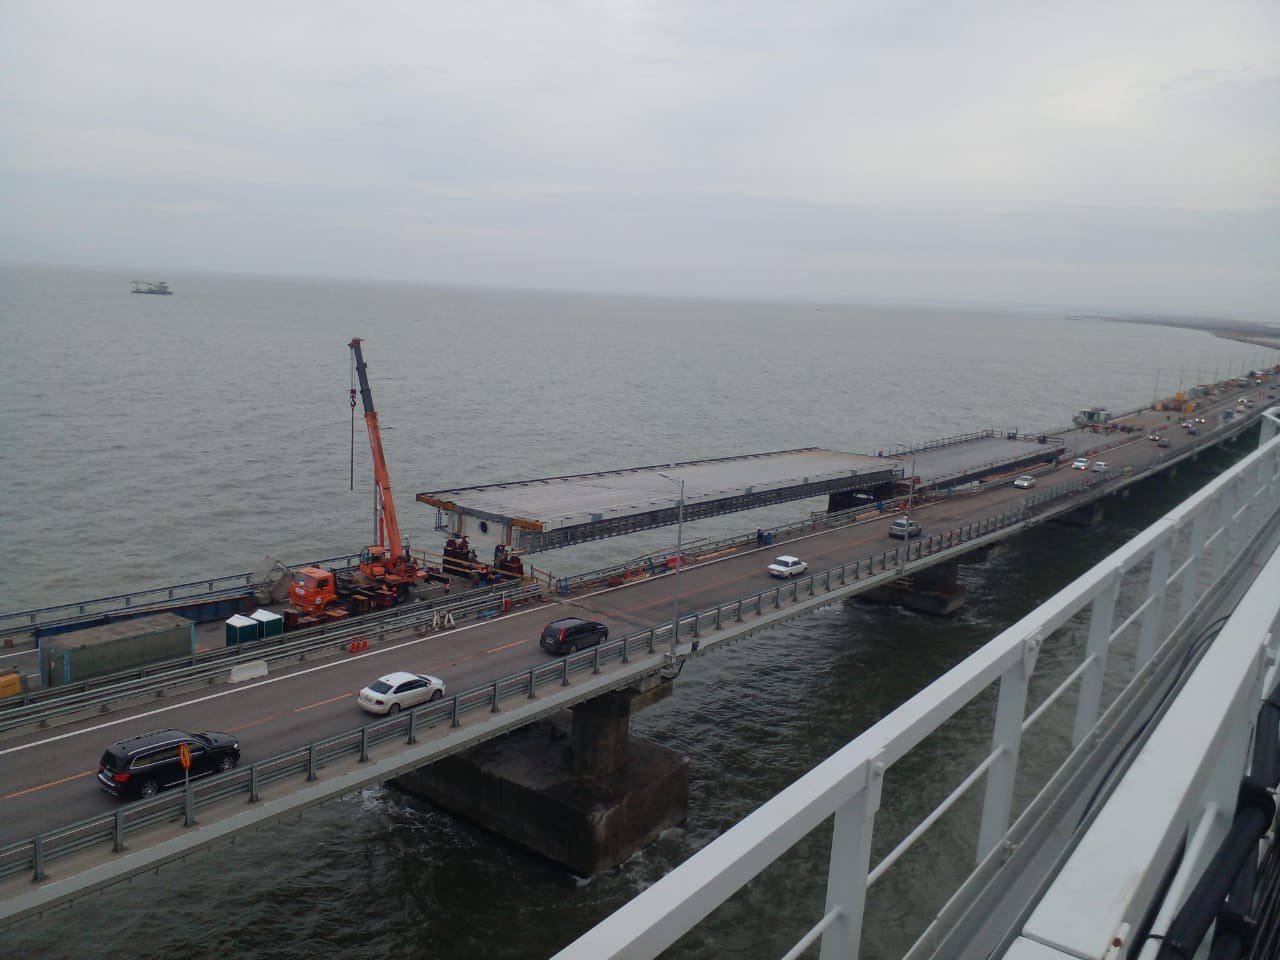 Хуснуллин заявил об установке всех пролётов Крымского моста. Фото © Telegram / Марат Хуснуллин